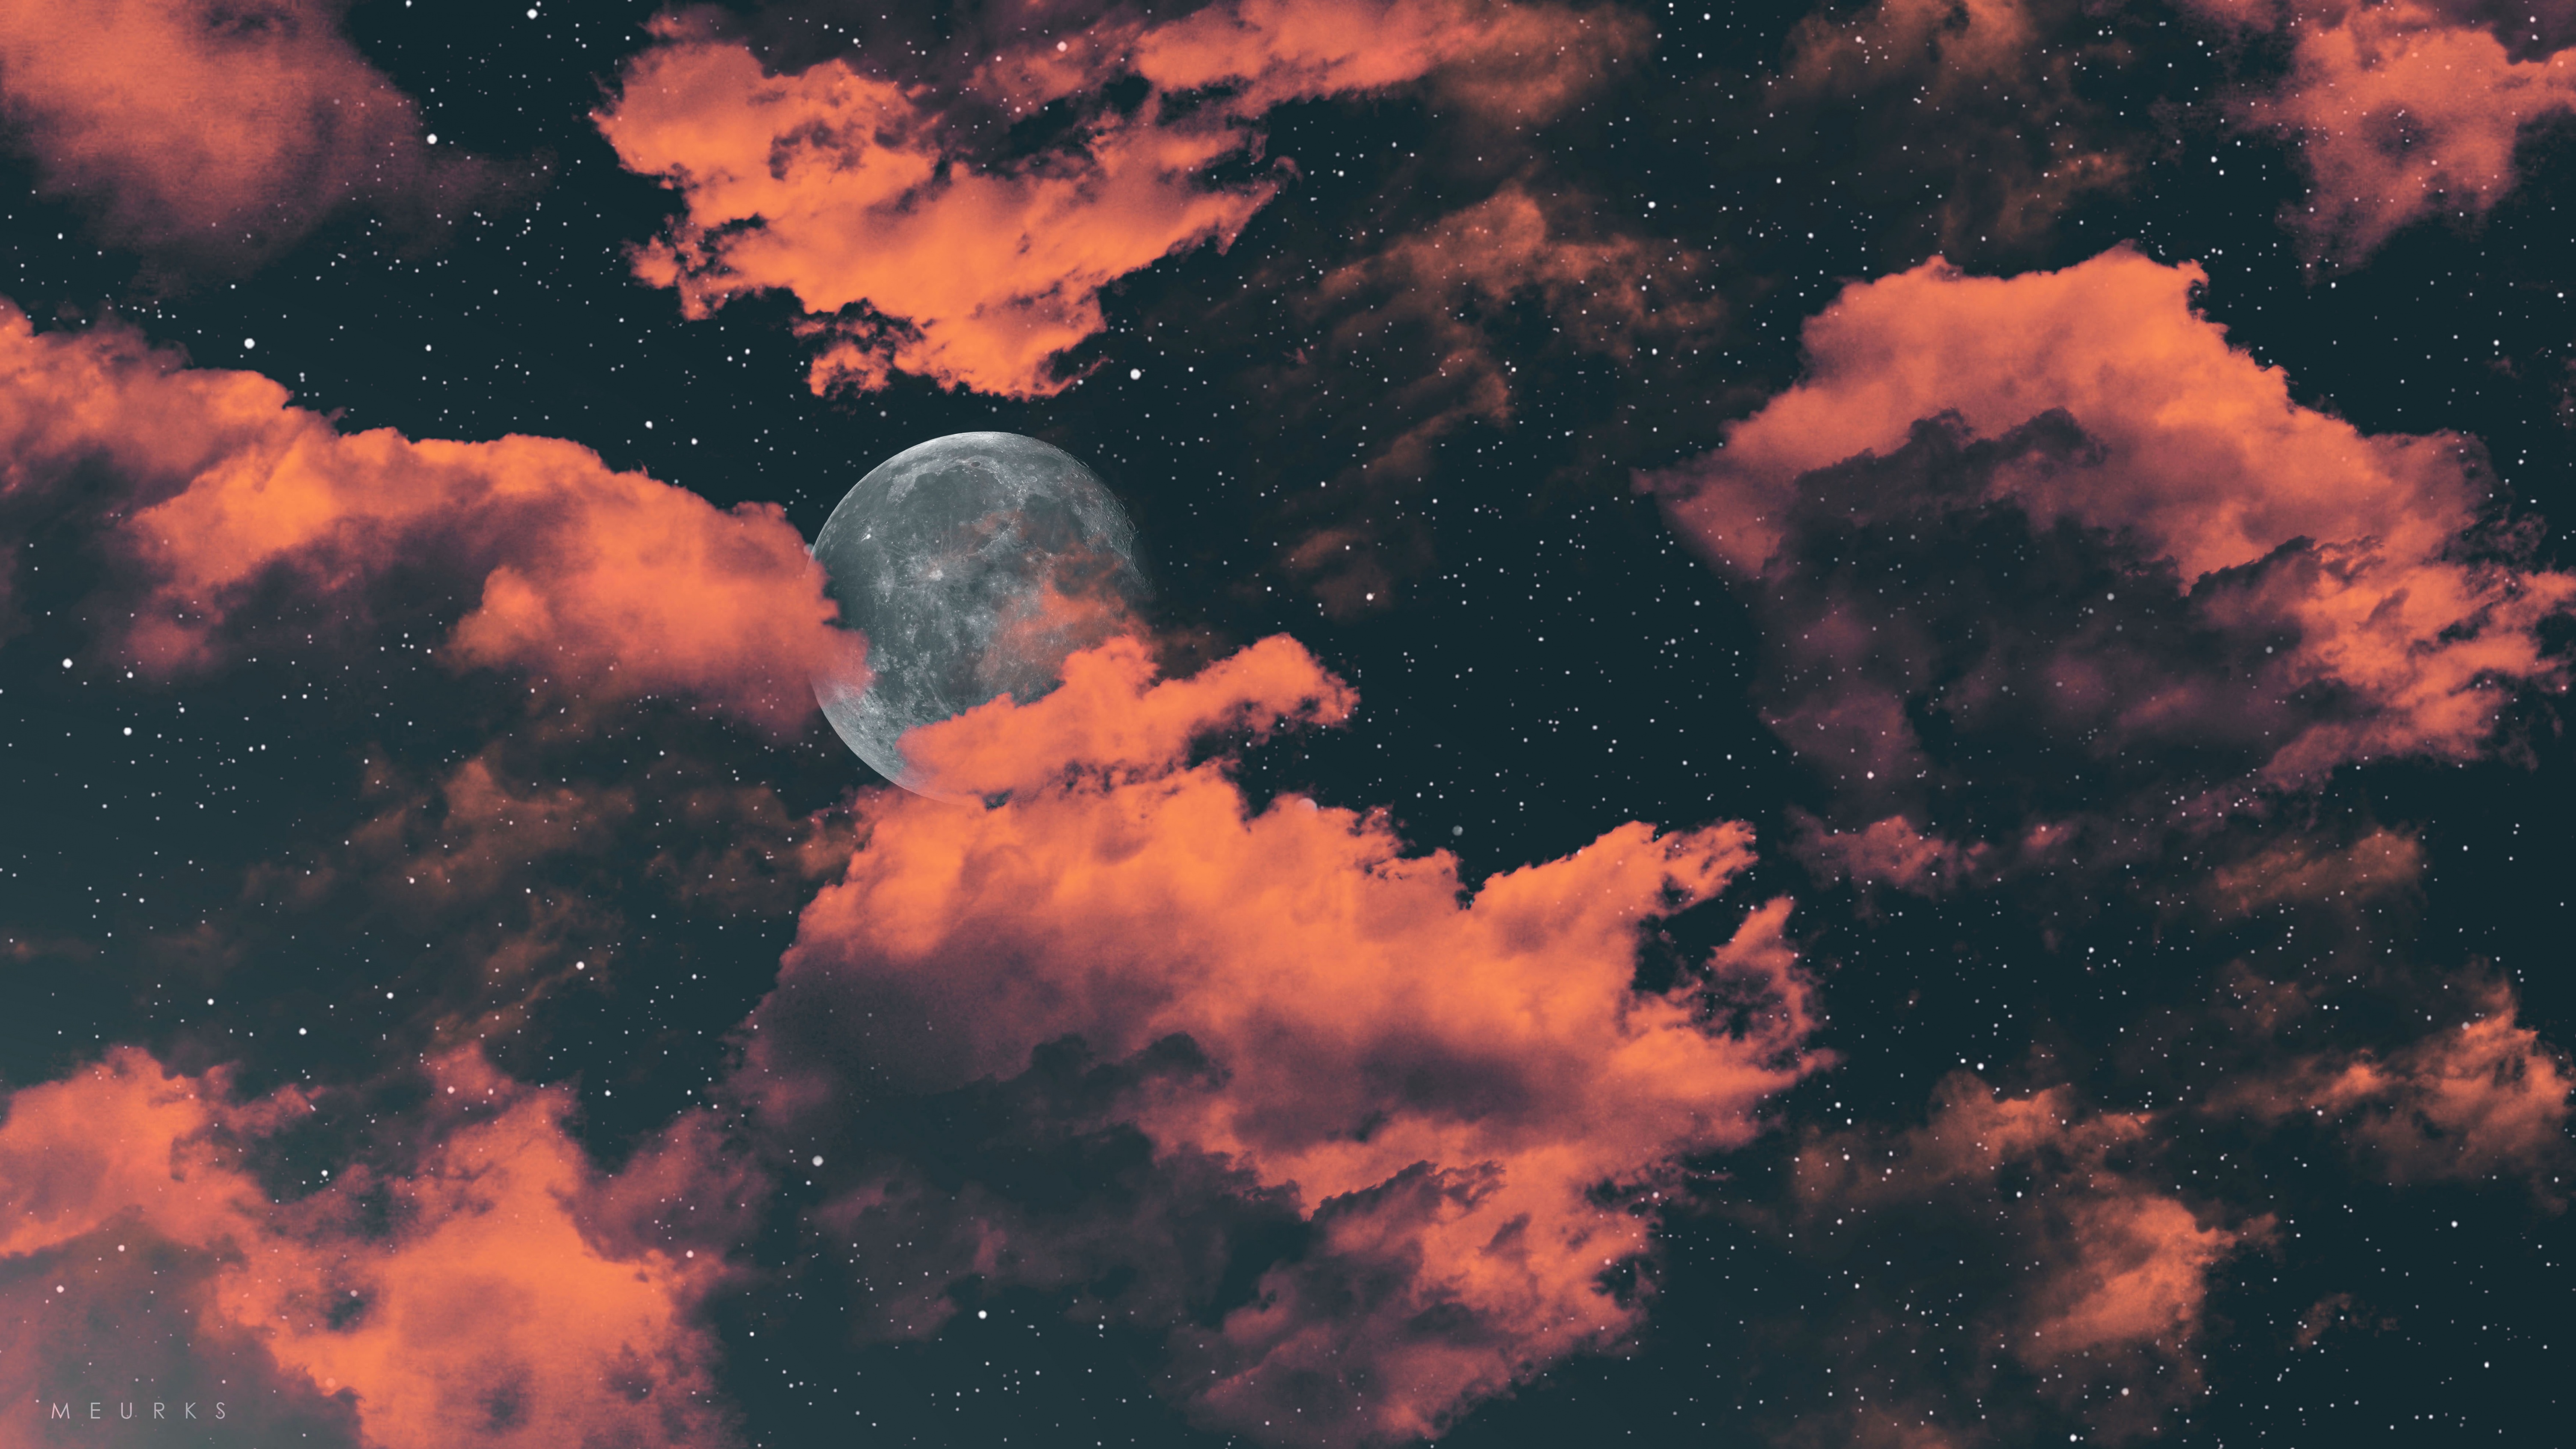 Bạn yêu thích ánh trăng tròn trịa trong đêm khuya? Hãy dành thời gian để xem hình nền Full moon đẹp mắt này nhé. Ánh trăng sáng giữa bầu trời đêm thật là tuyệt vời và hình nền này mang lại cho bạn cảm giác thật hoàn hảo khi sử dụng điện thoại của mình.